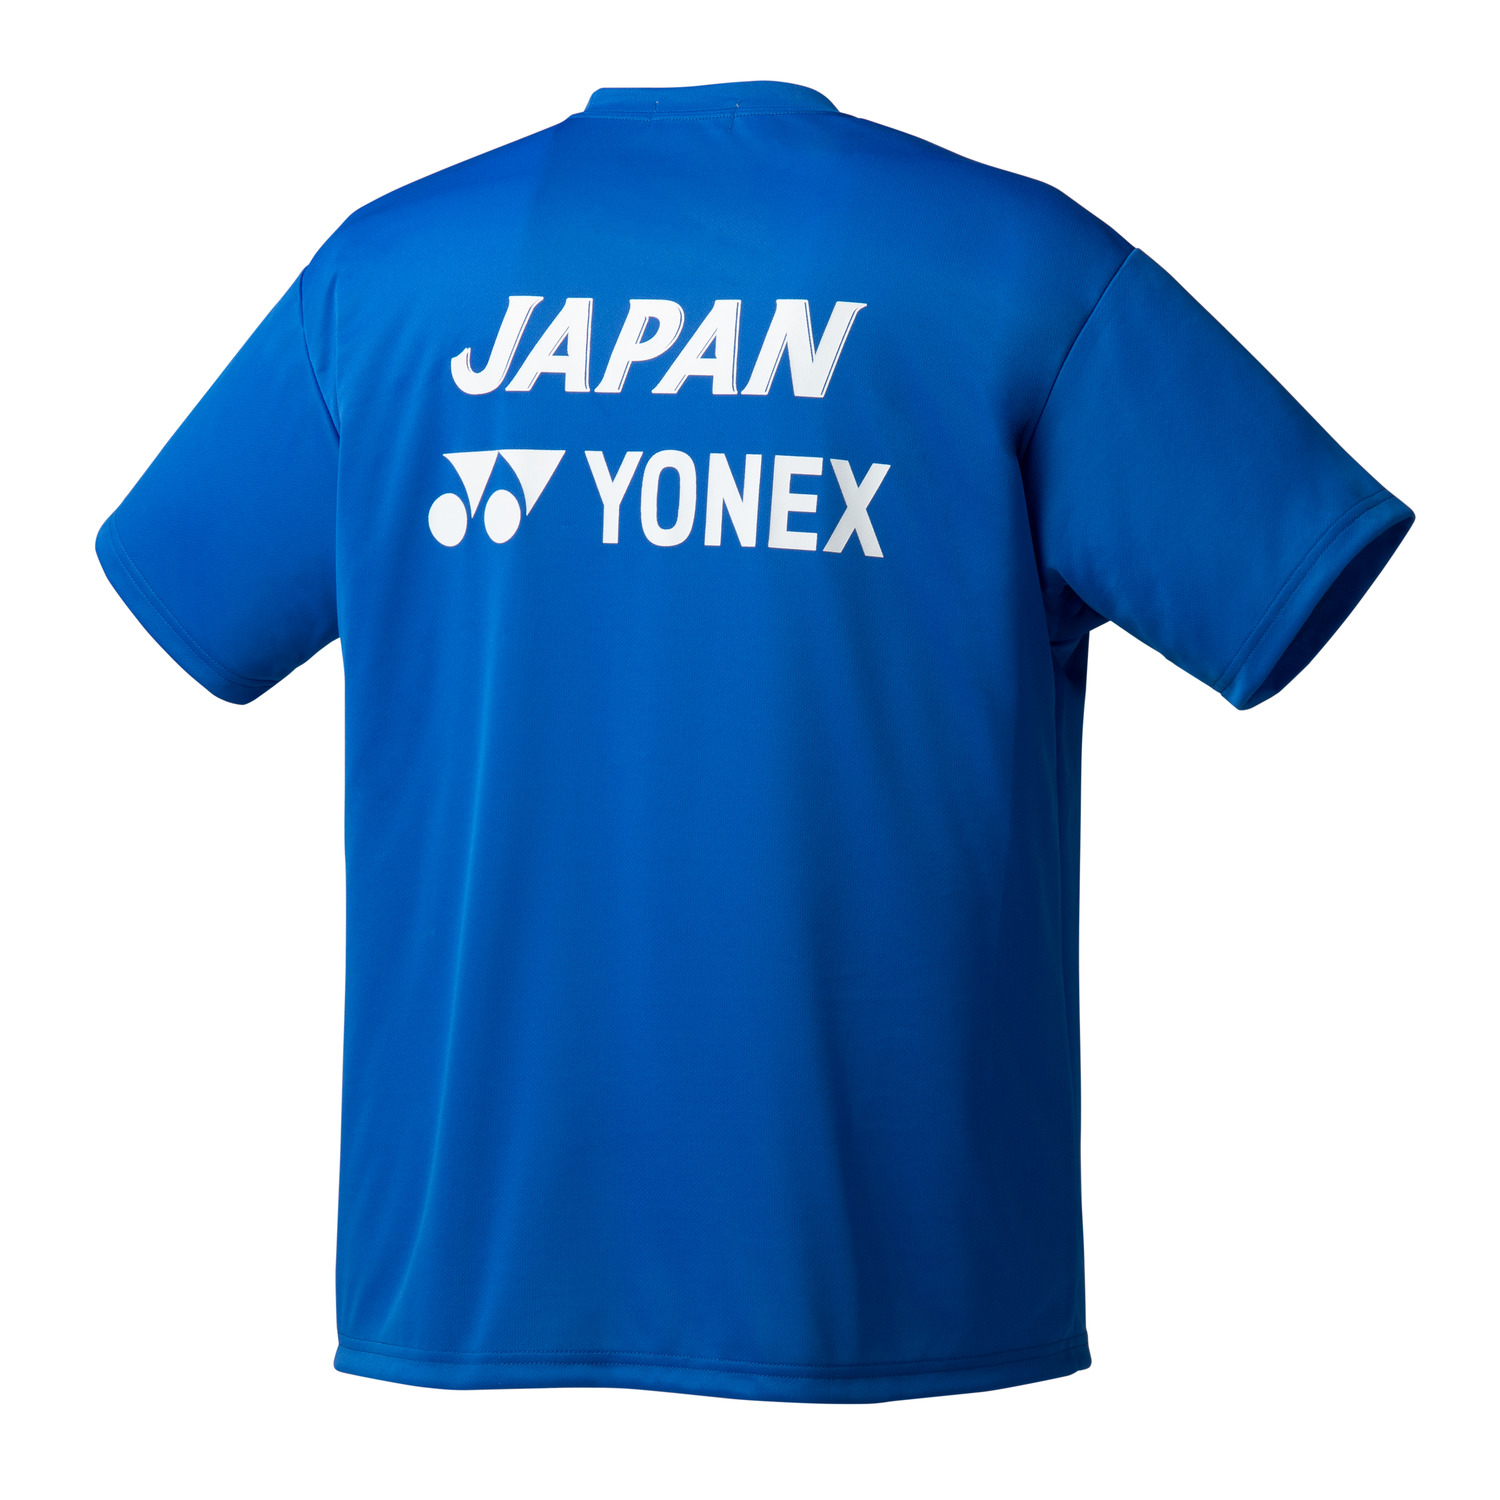 ★数量限定品★SSサイズ★在庫希少、YONEX新品Tシャツ★生産終了